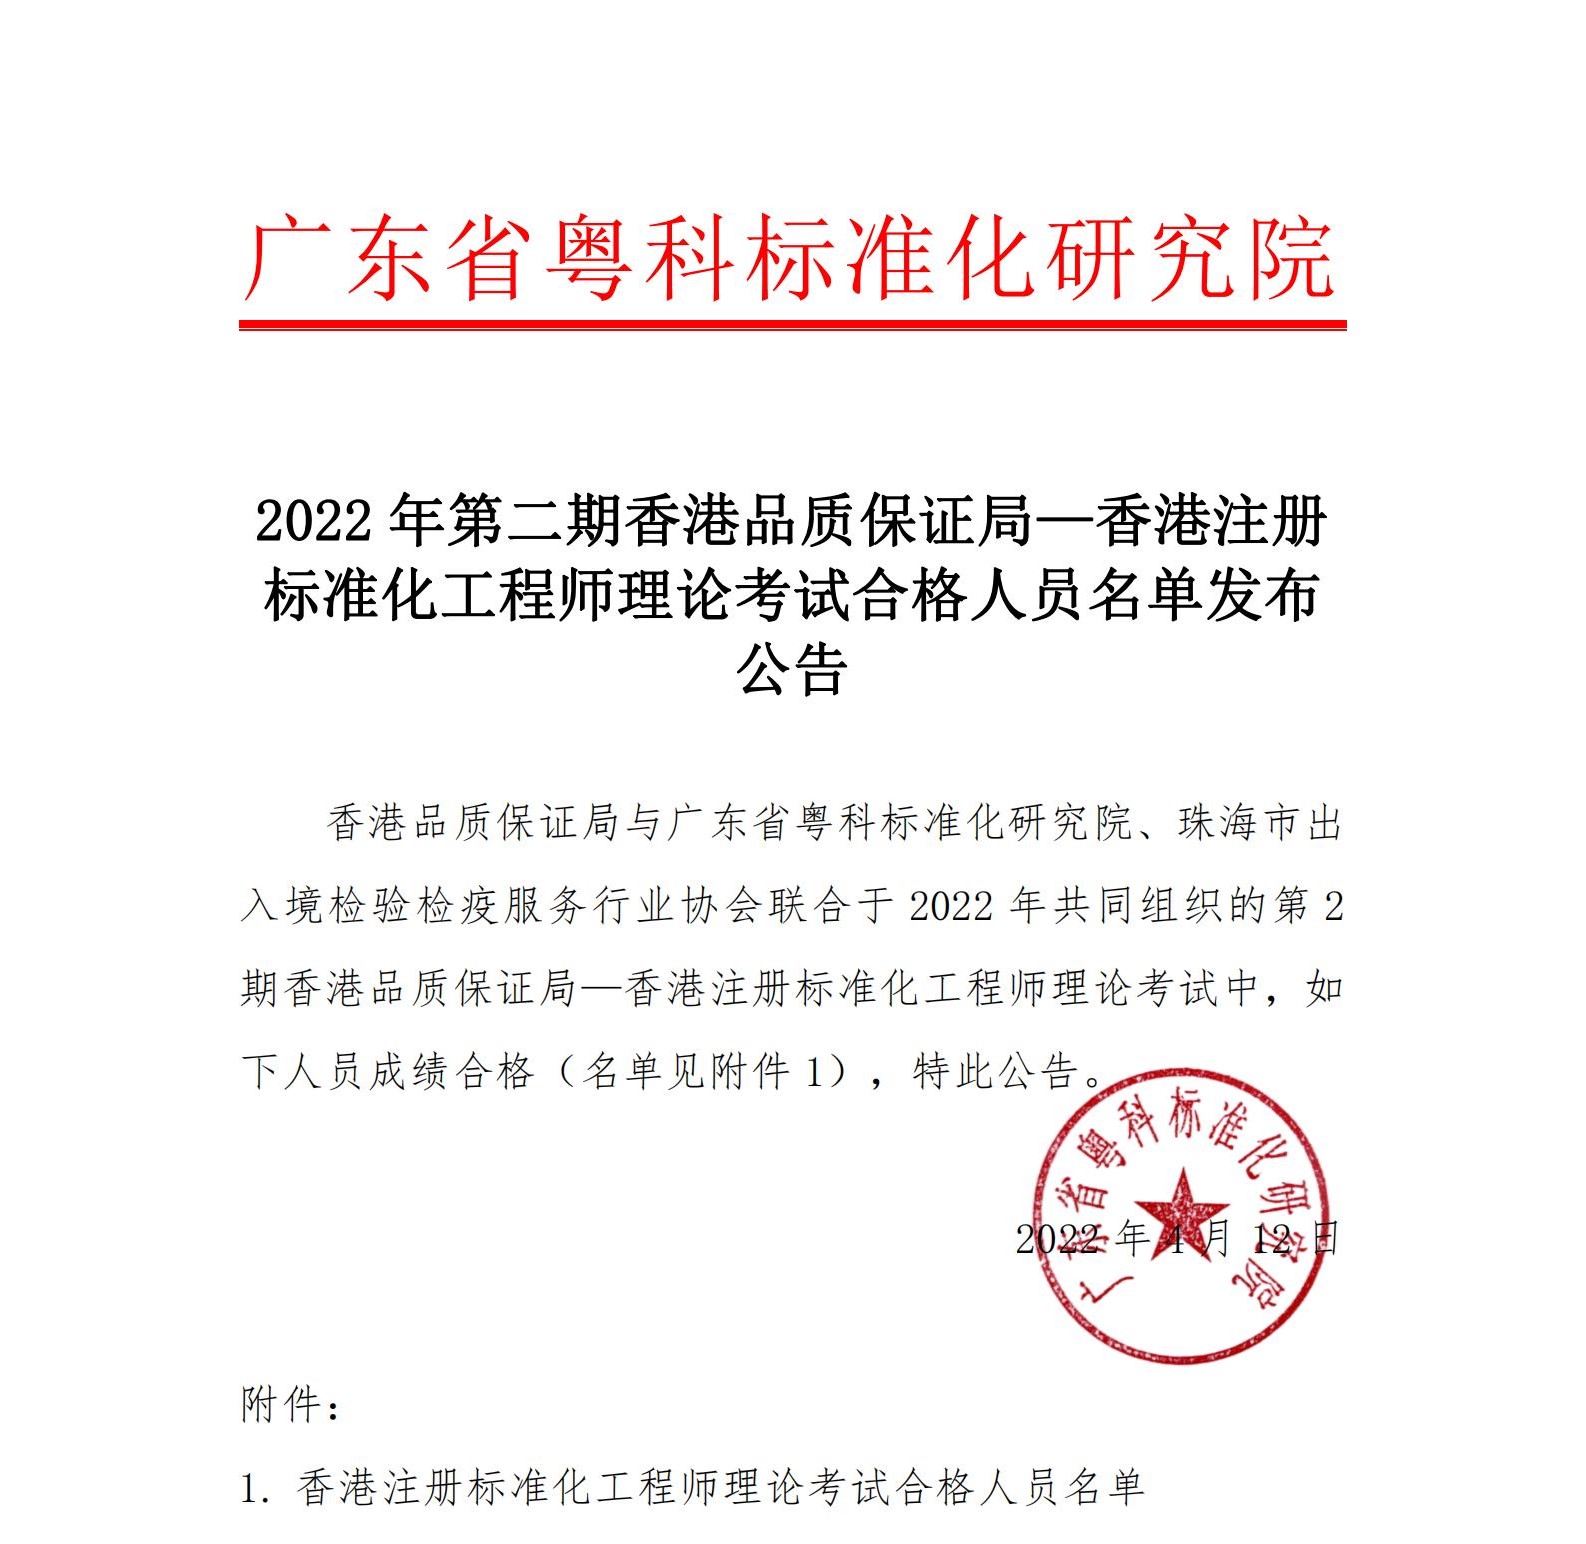 10 2022年第二期香港品质保证局注册标准化工程师理论考试合格人员名单发布公告_00.jpg